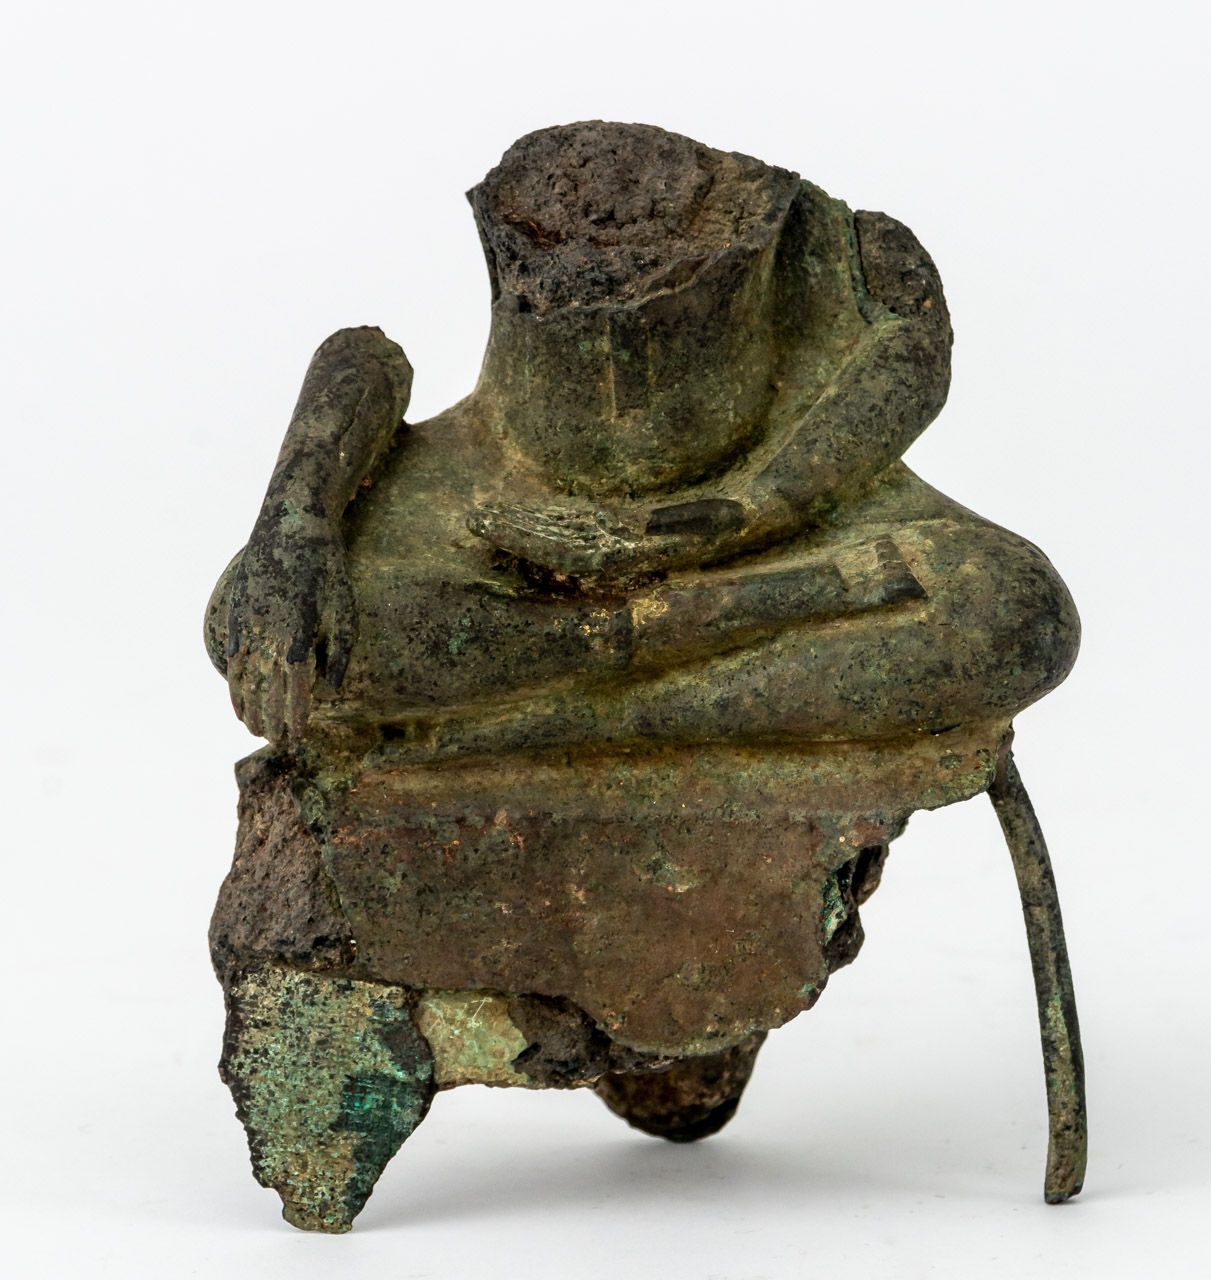 FRAGMENT EINES BUDDHA Bronze, 18. Jh. Oder älter

13,2 cm hoch